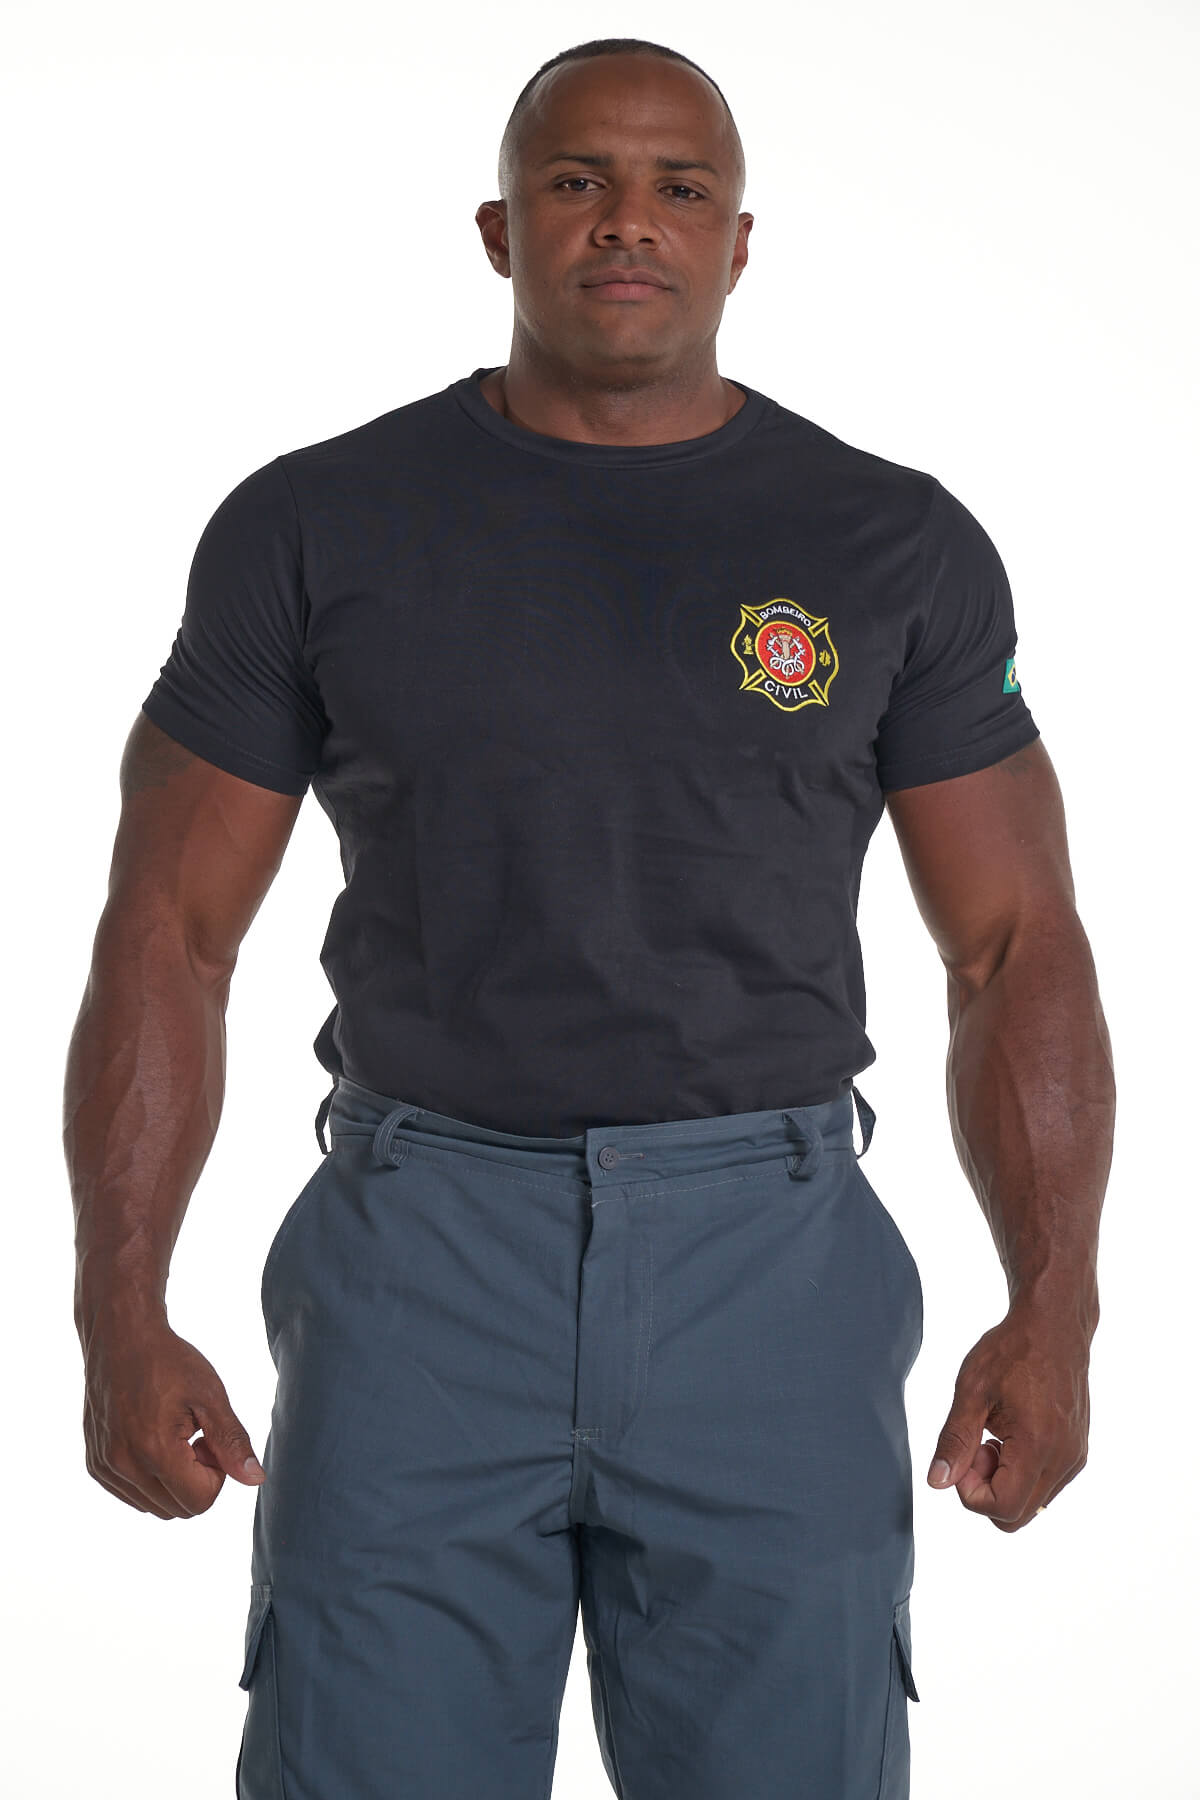 Design de camiseta de bombeiro lendário